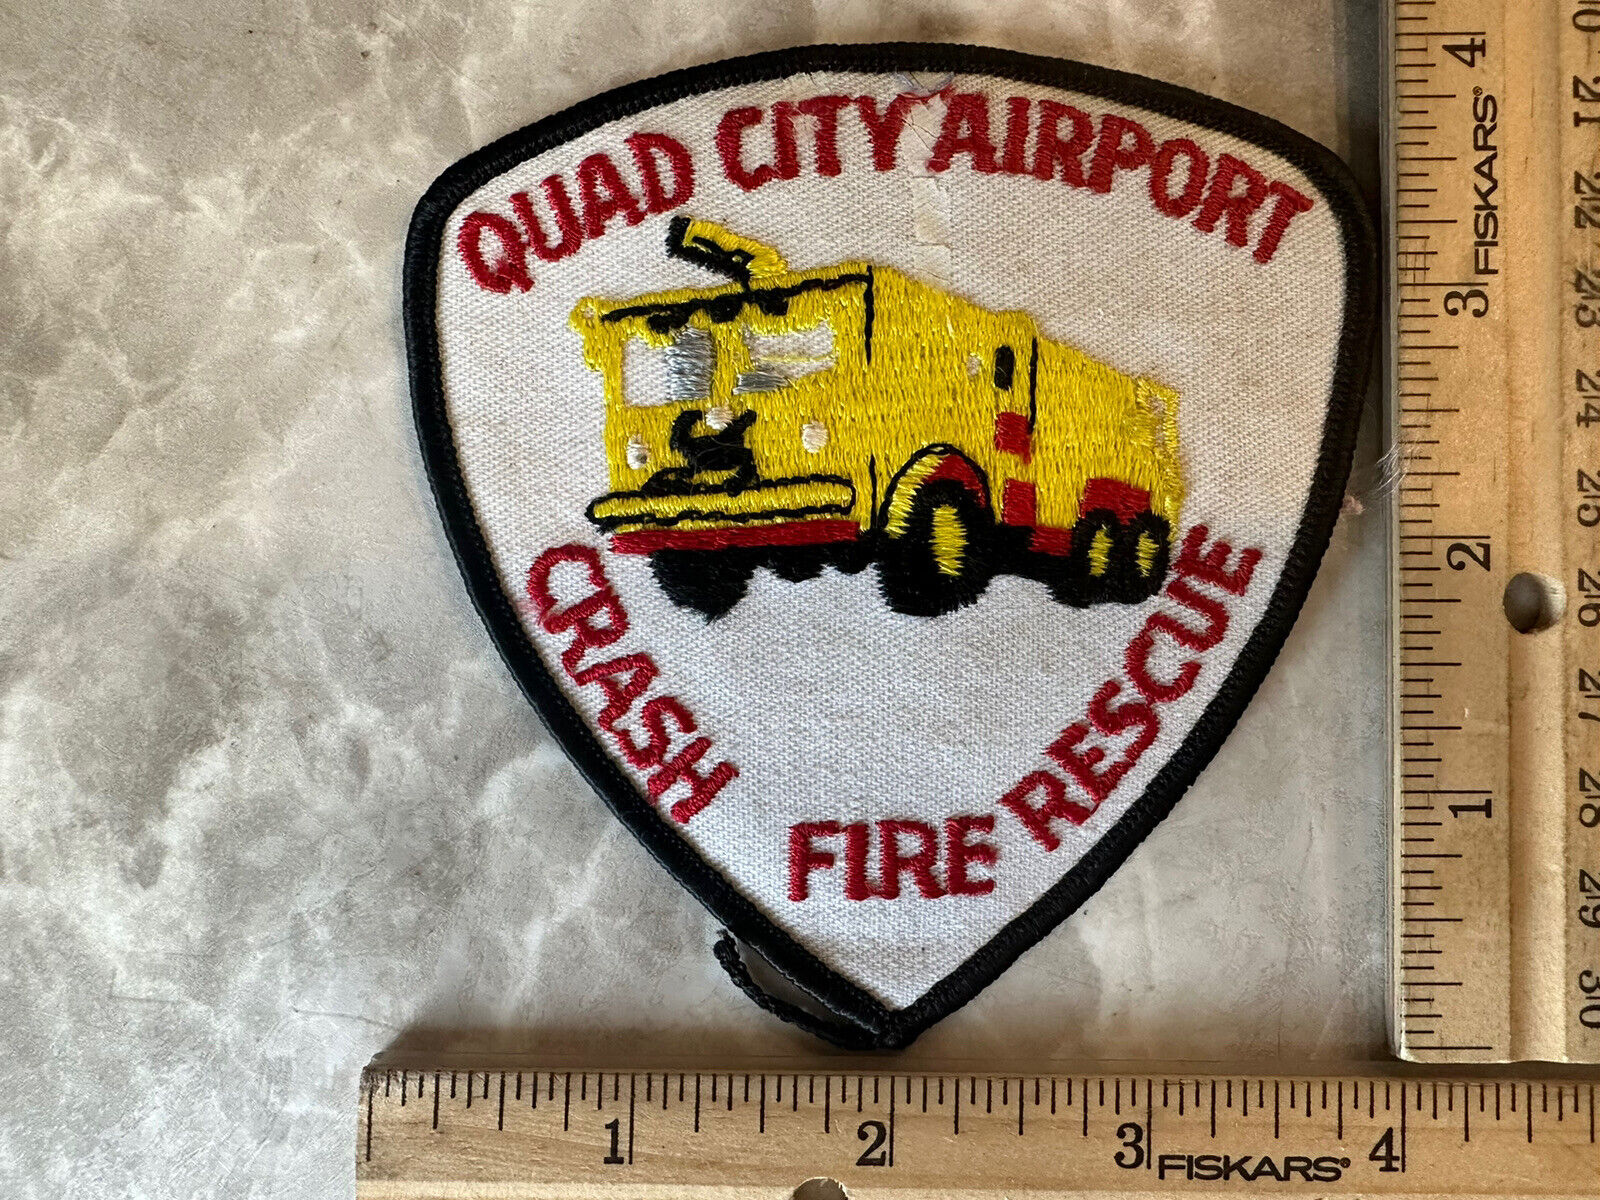 Quad City Airport Crash Fire Rescue Illinois Fire Department Patch